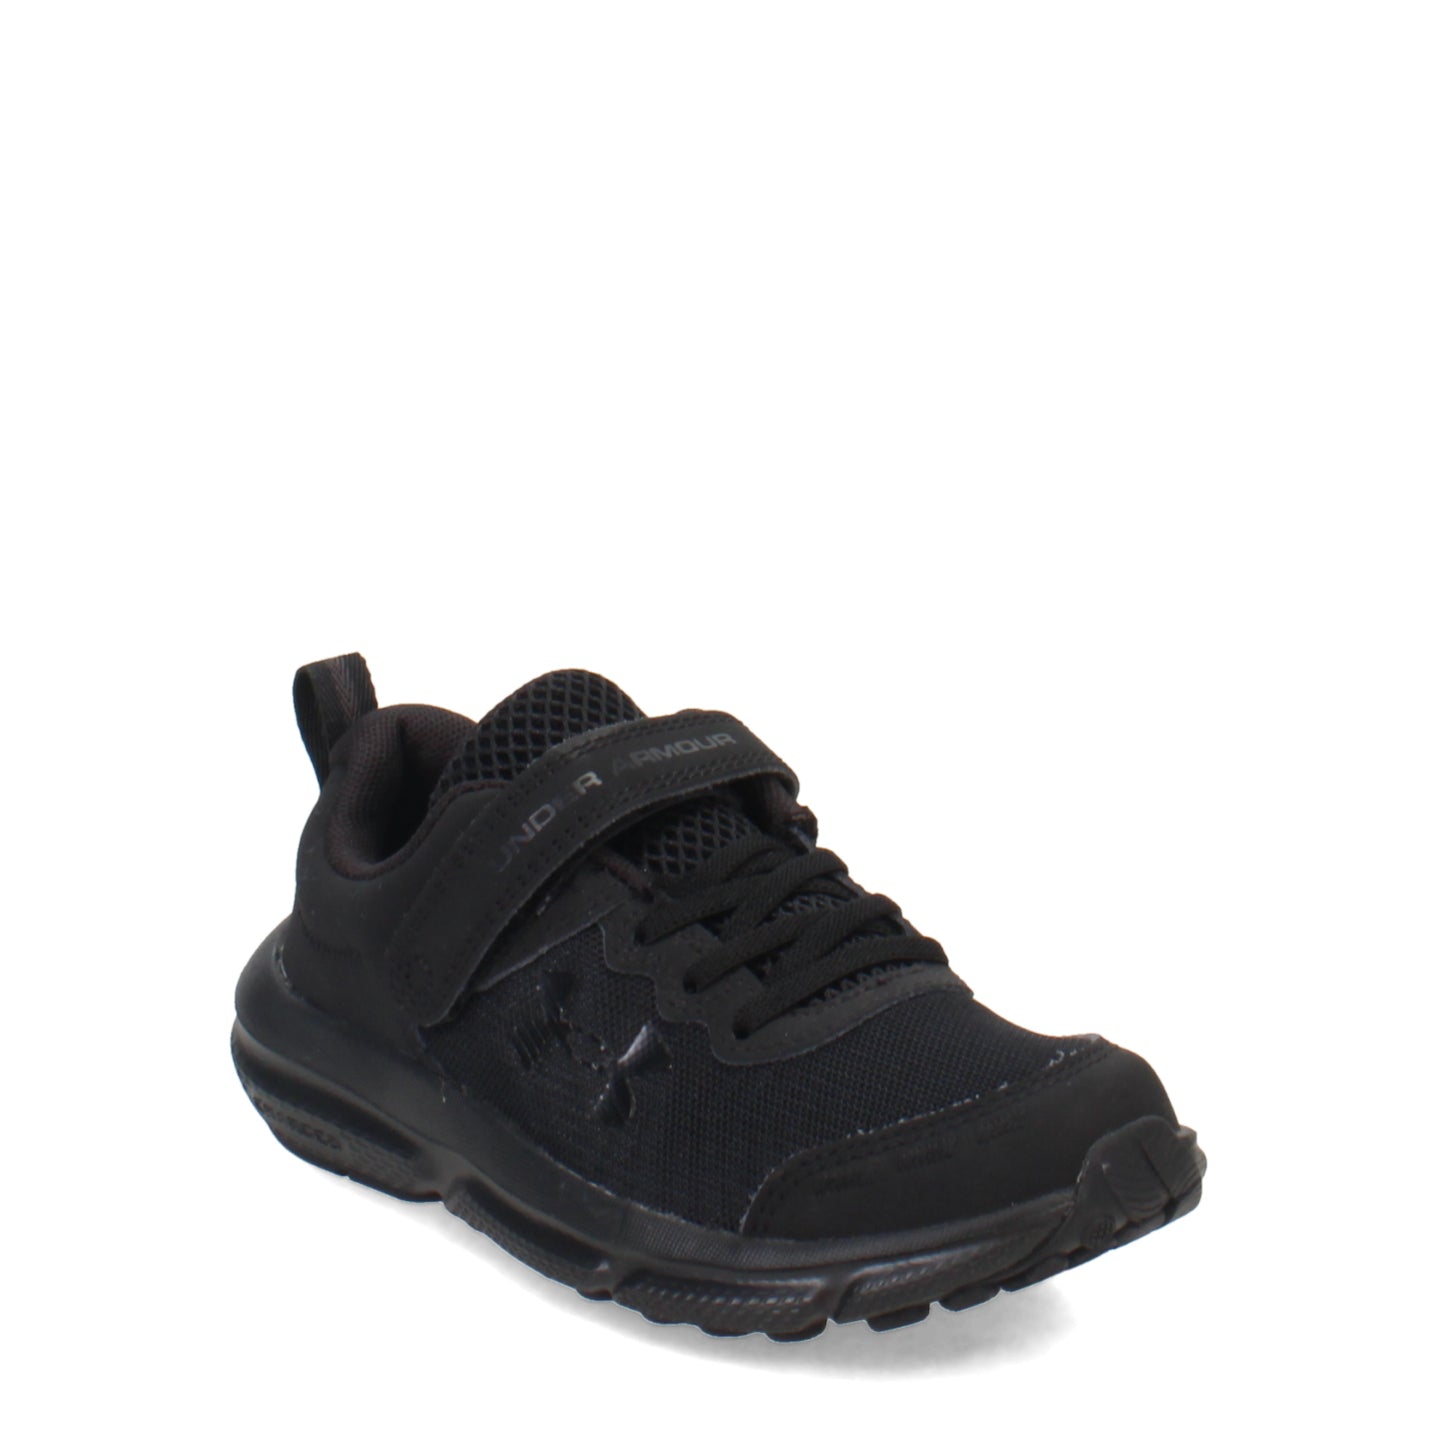 Peltz Shoes  Boy's Under Armour Assert 10 AC Running Shoe - Little Kid AC Black/Black 3026183-002